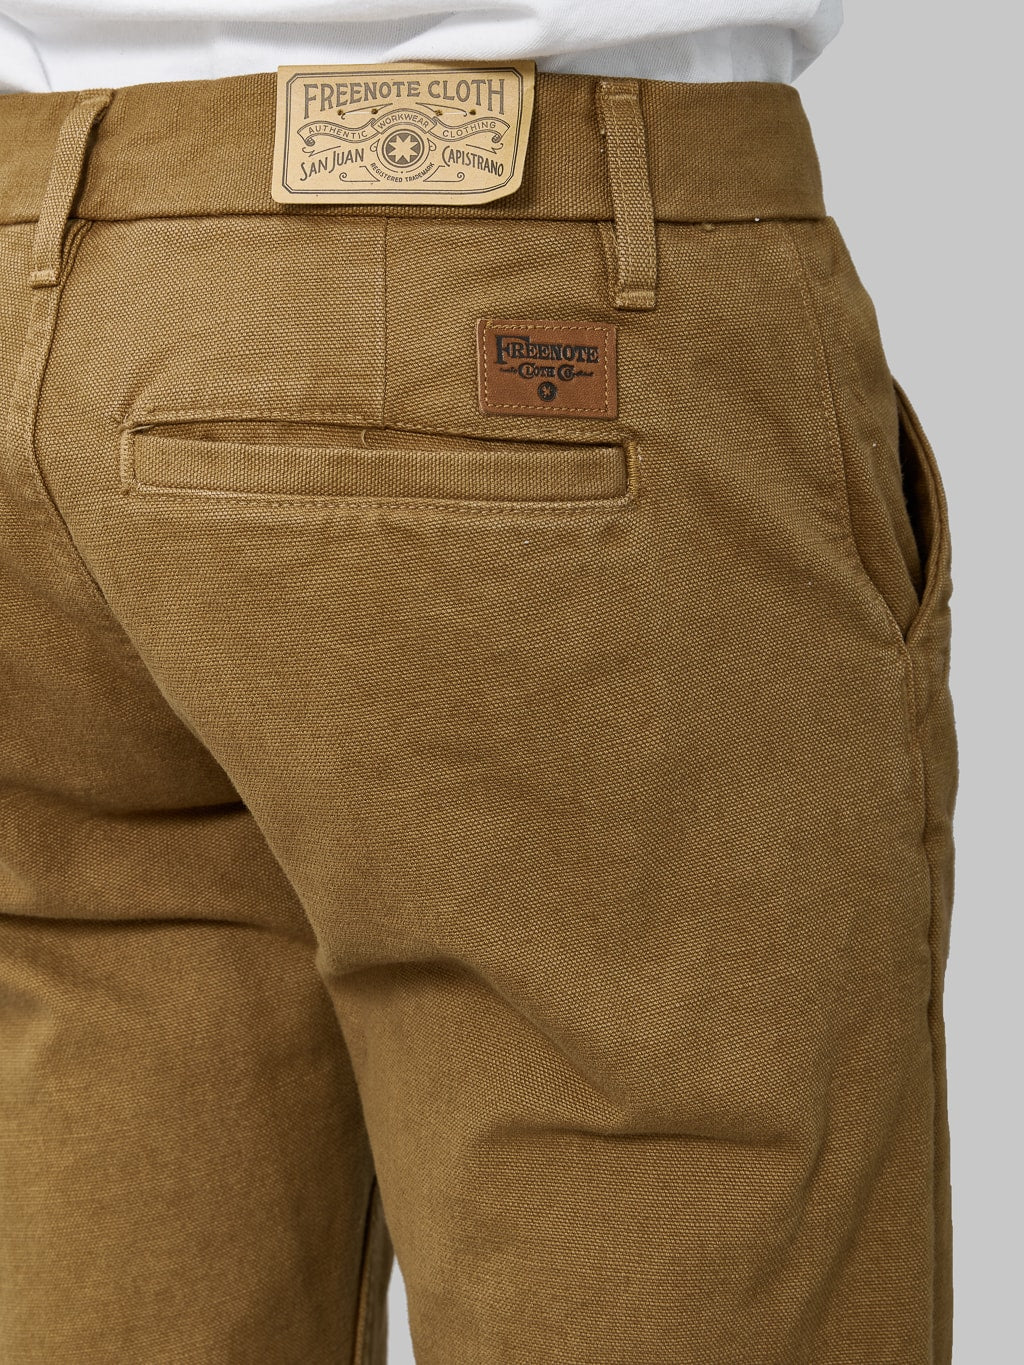 freenote cloth workers chino slim fit slub tan back pocket